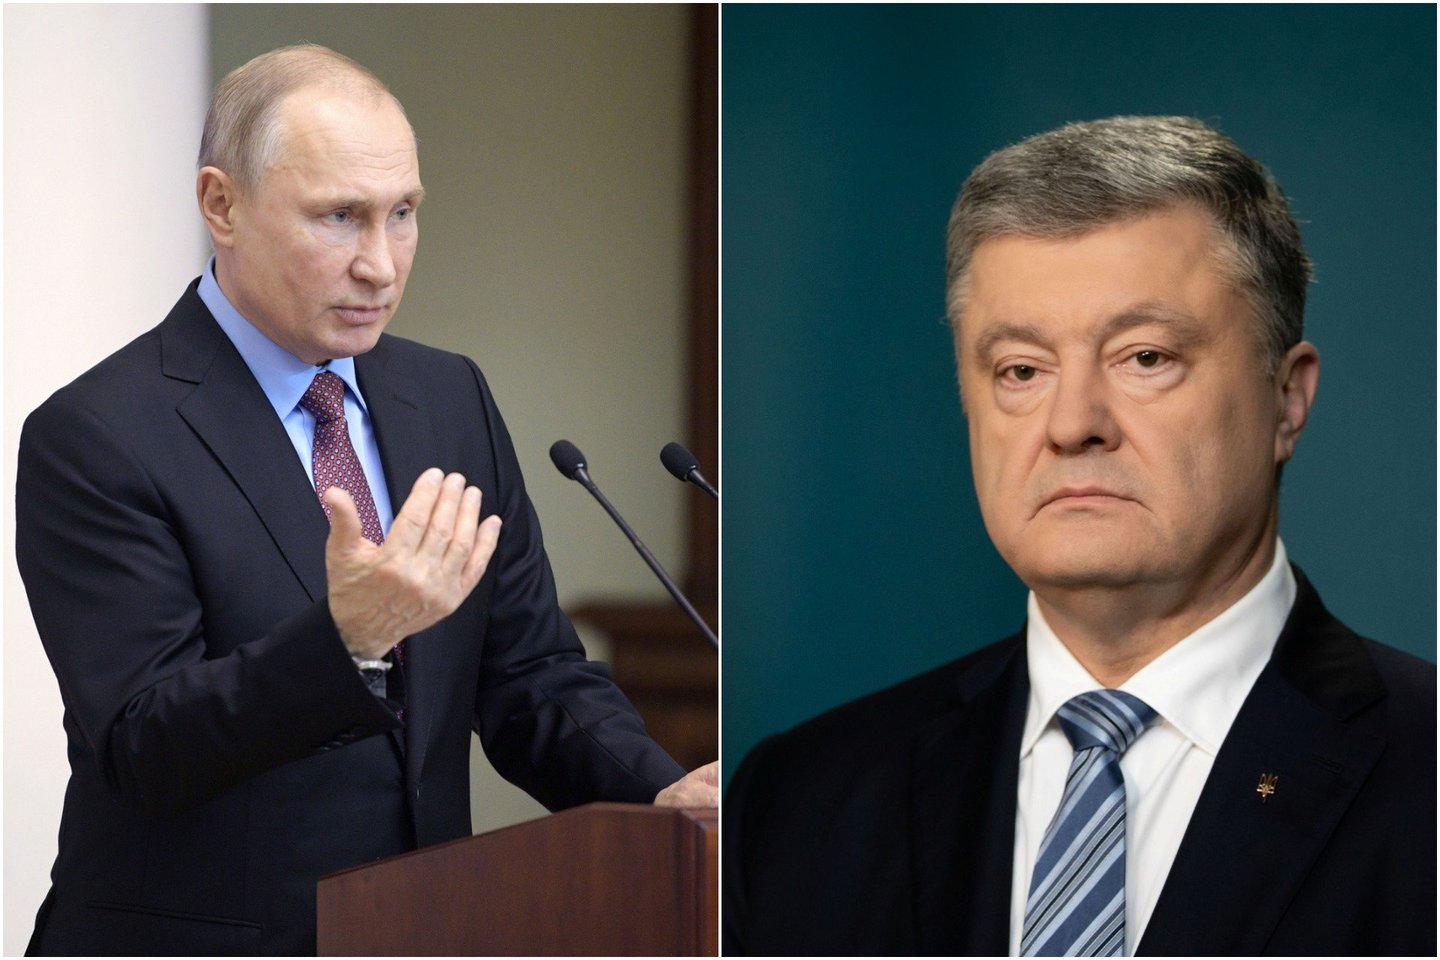  P.Porošenkos teigimu, Kremliaus sprendimas palengvinta tvarka išduoti Rytų Ukrainos gyventojams rusiškus pasus yra mėginimas legitimizuoti Rusijos karinį buvimą toje teritorijoje.<br> Reuters/Scanpix nuotr.